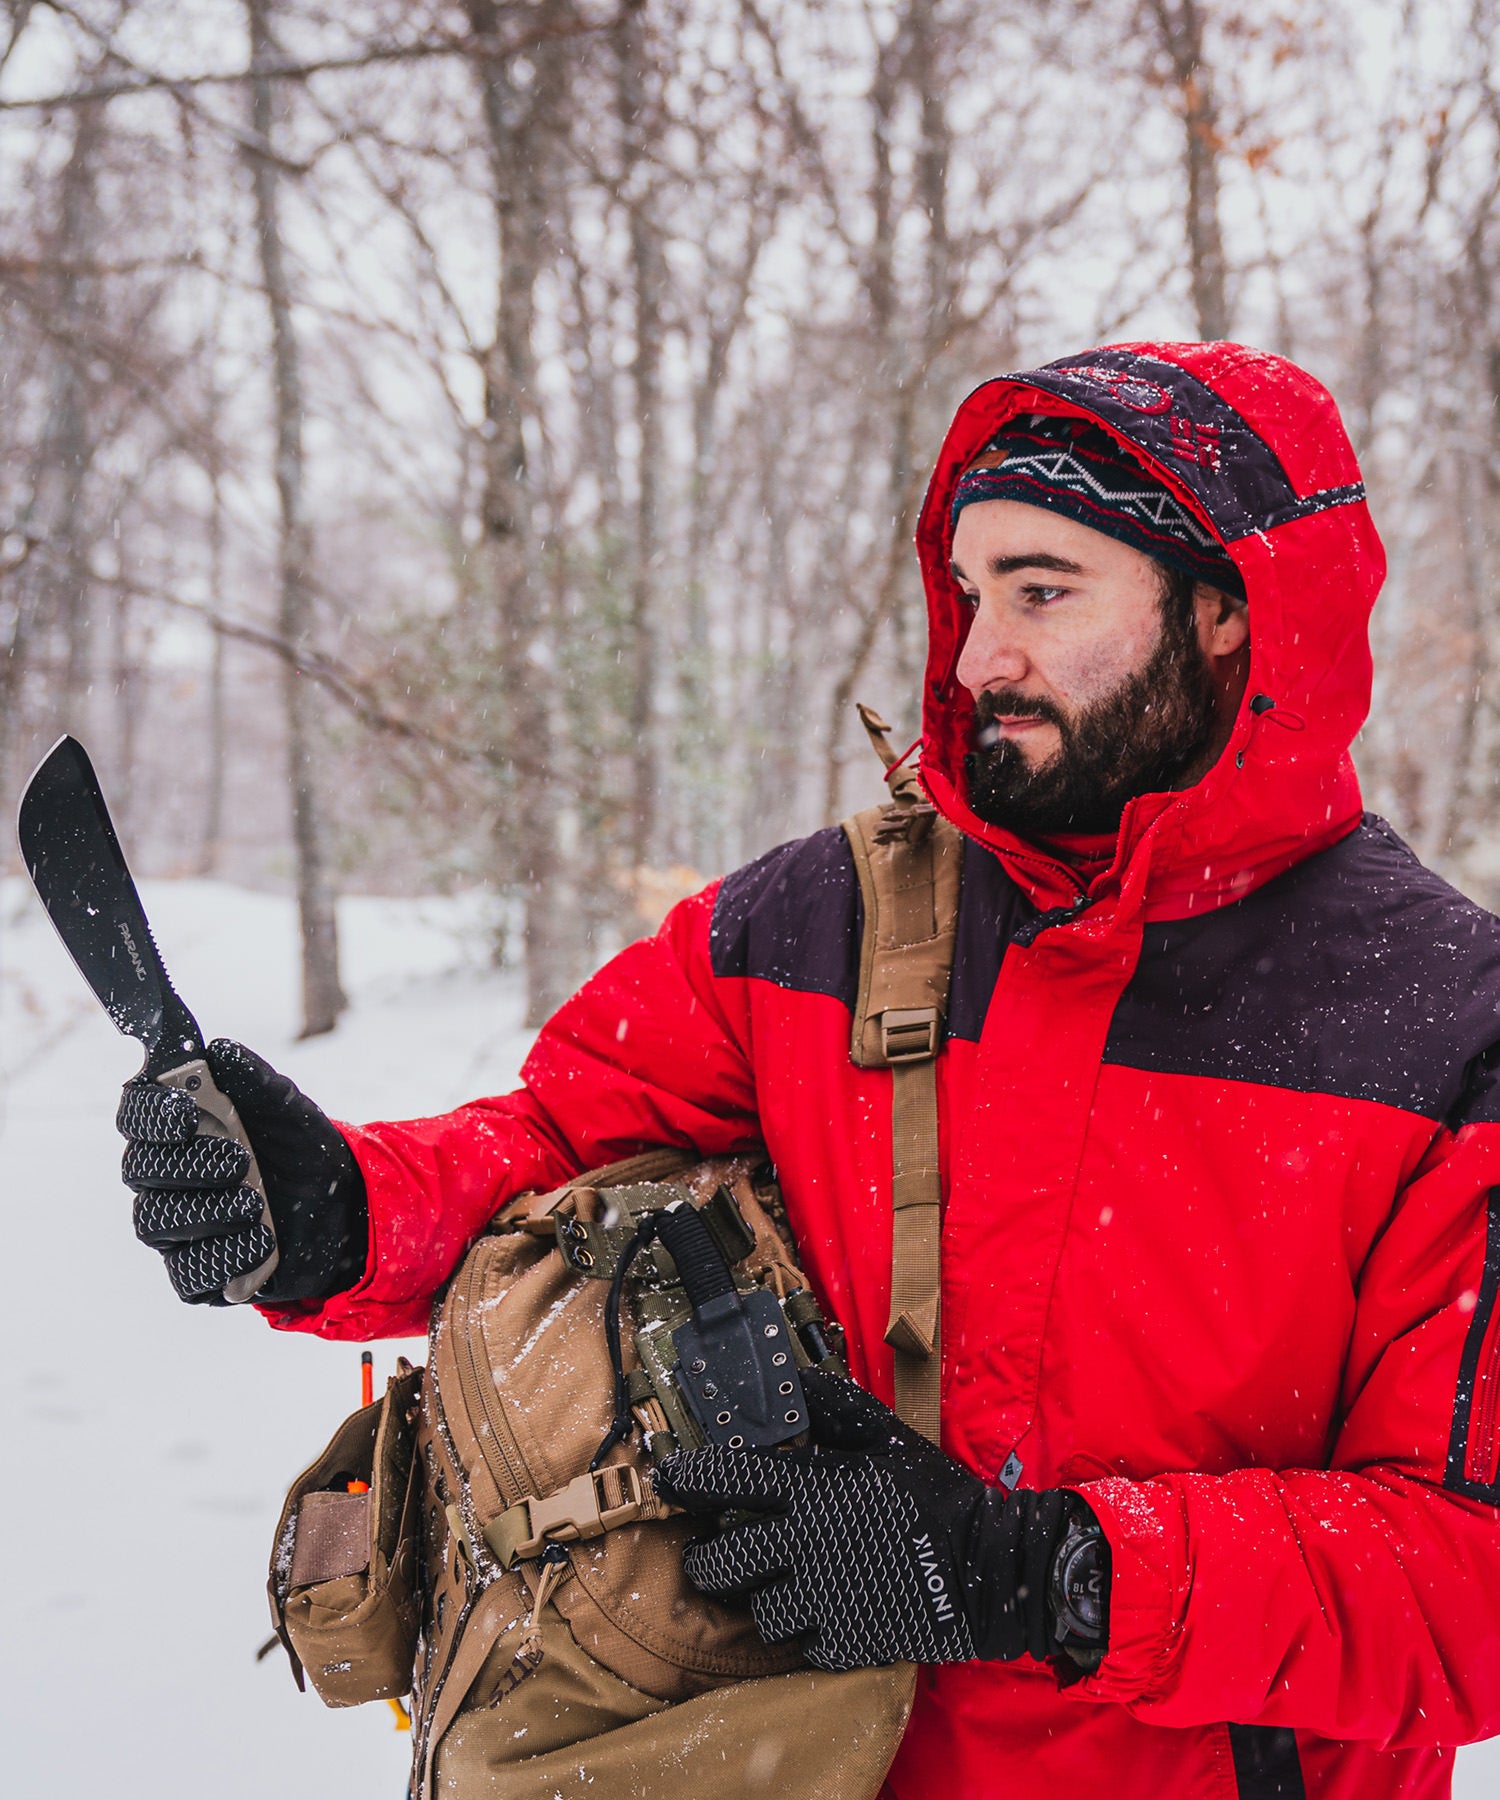 Paolo di backpacco estrae il parang durante un'escursione nella neve